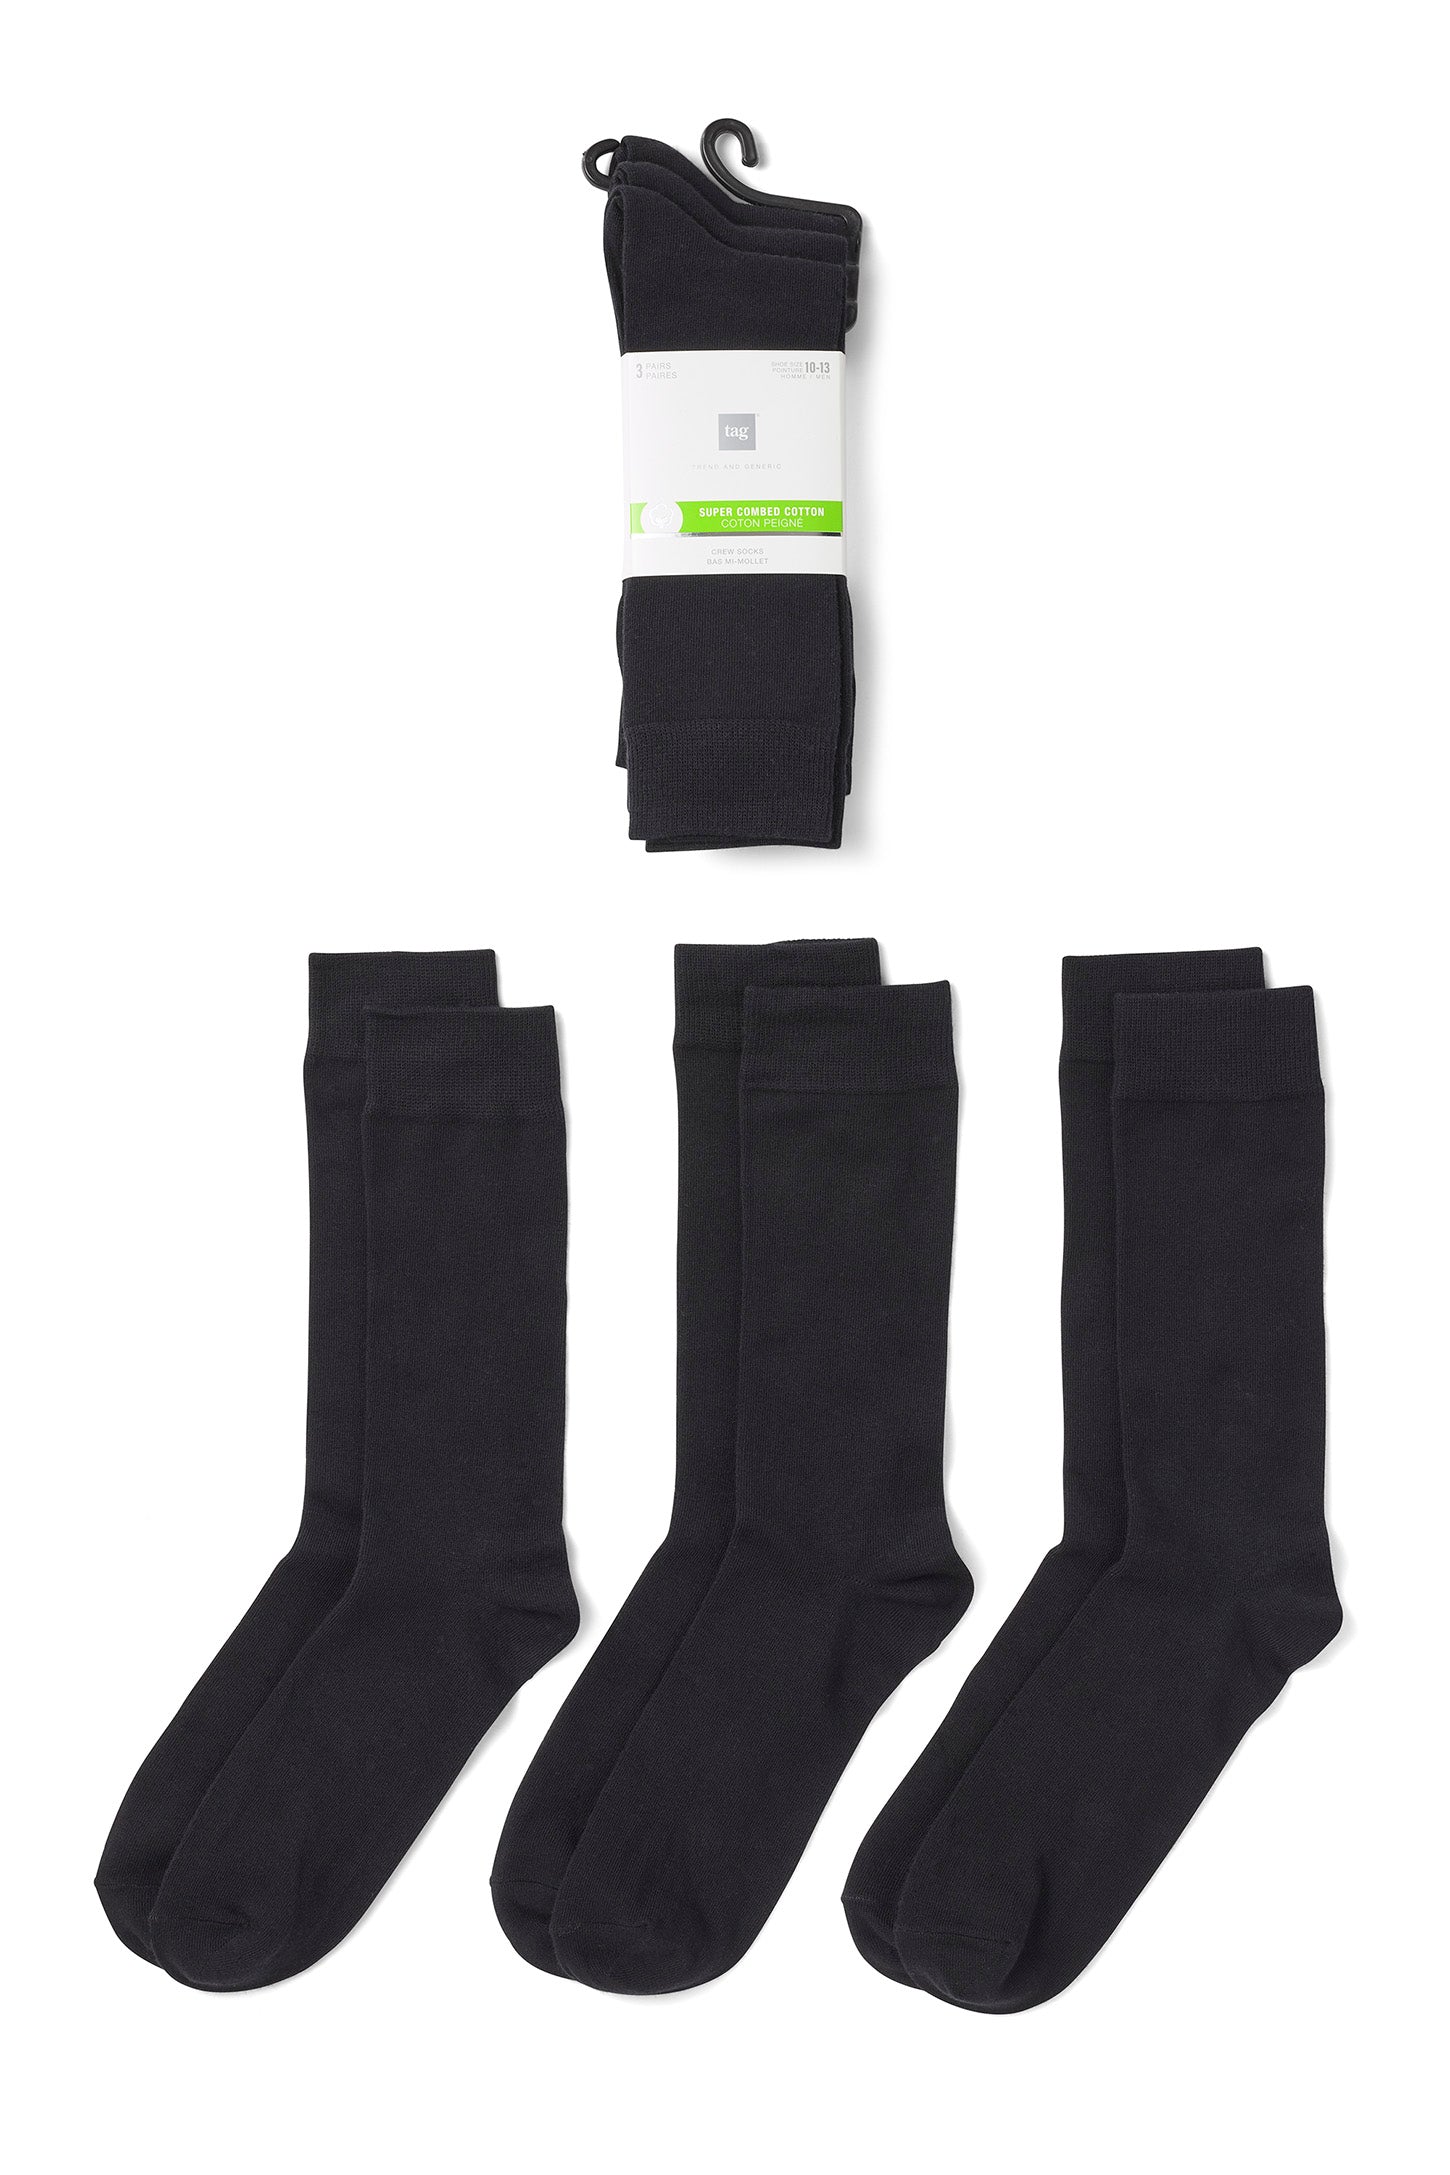 Lot de 3 paires de socquettes homme Training Dry noir en coton Athéna -  Chaussettes Homme sur MenCorner